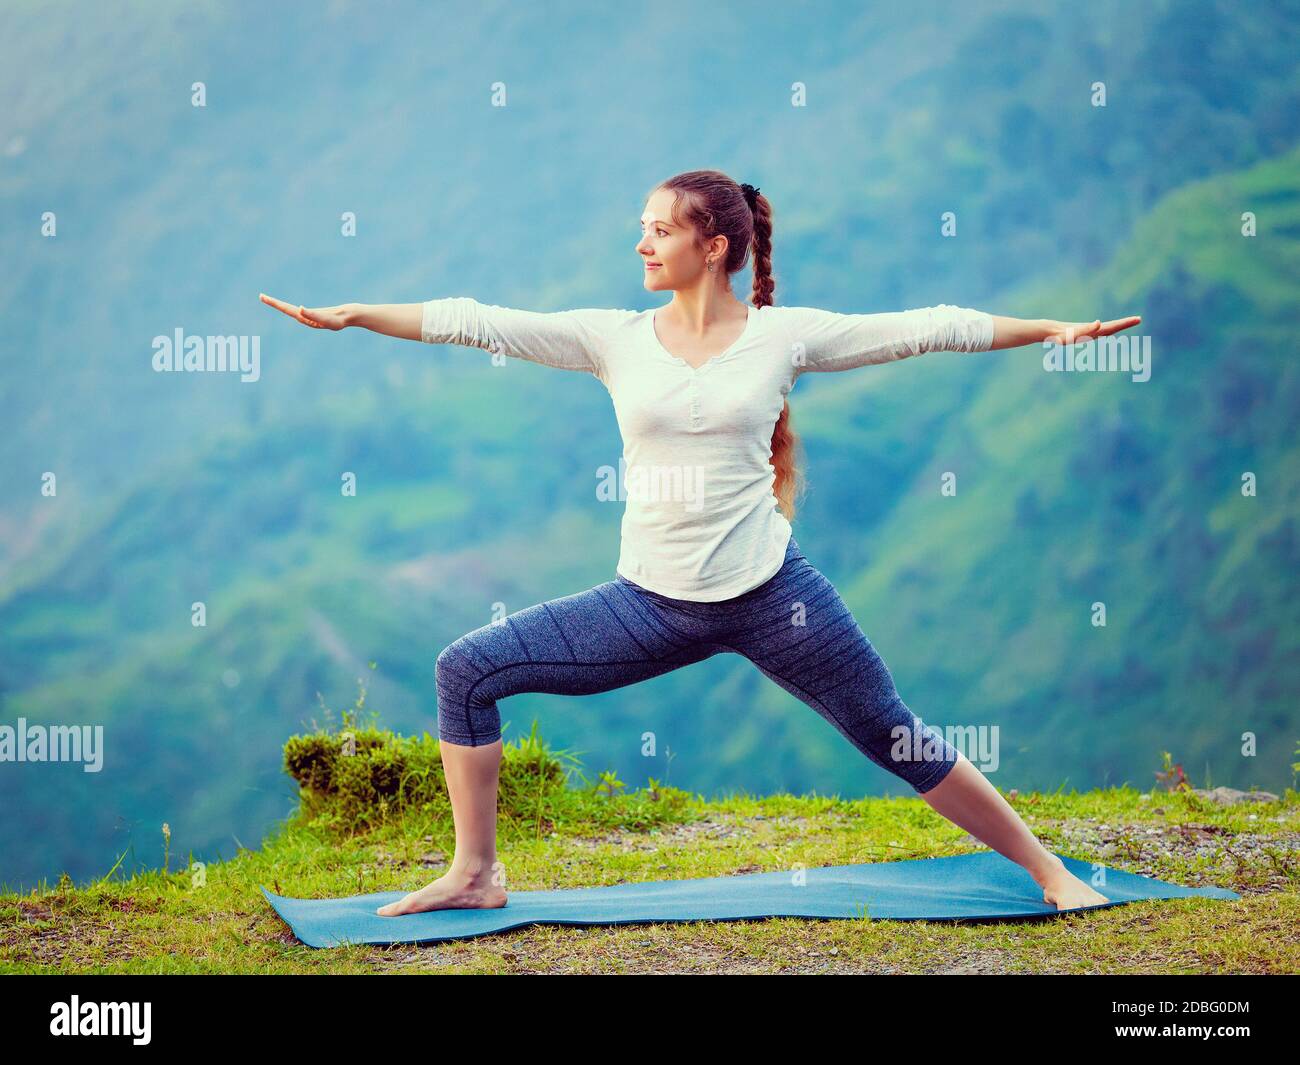 Yoga à l'extérieur - femme sportive faisant Ashtanga Vinyasa Yoga asana Virabhadrasana 2 posture du guerrier en montagne. Effet rétro vintage filtré h Banque D'Images